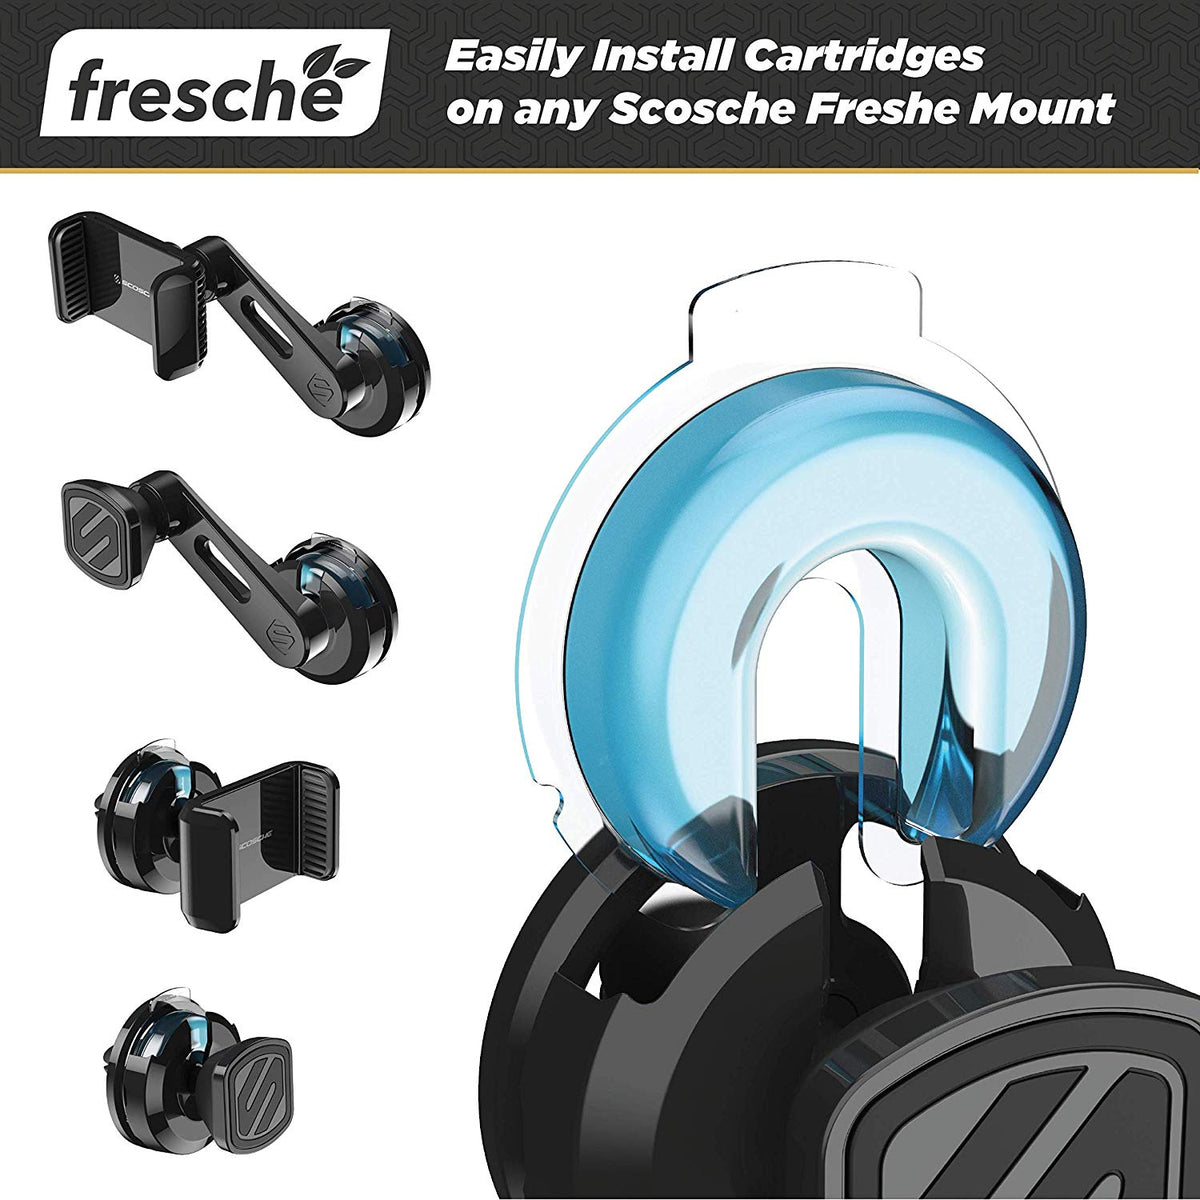 SCOSCHE Air Freshener Refill Cartridges for Fresche Mounts - 2 Packs - New Car